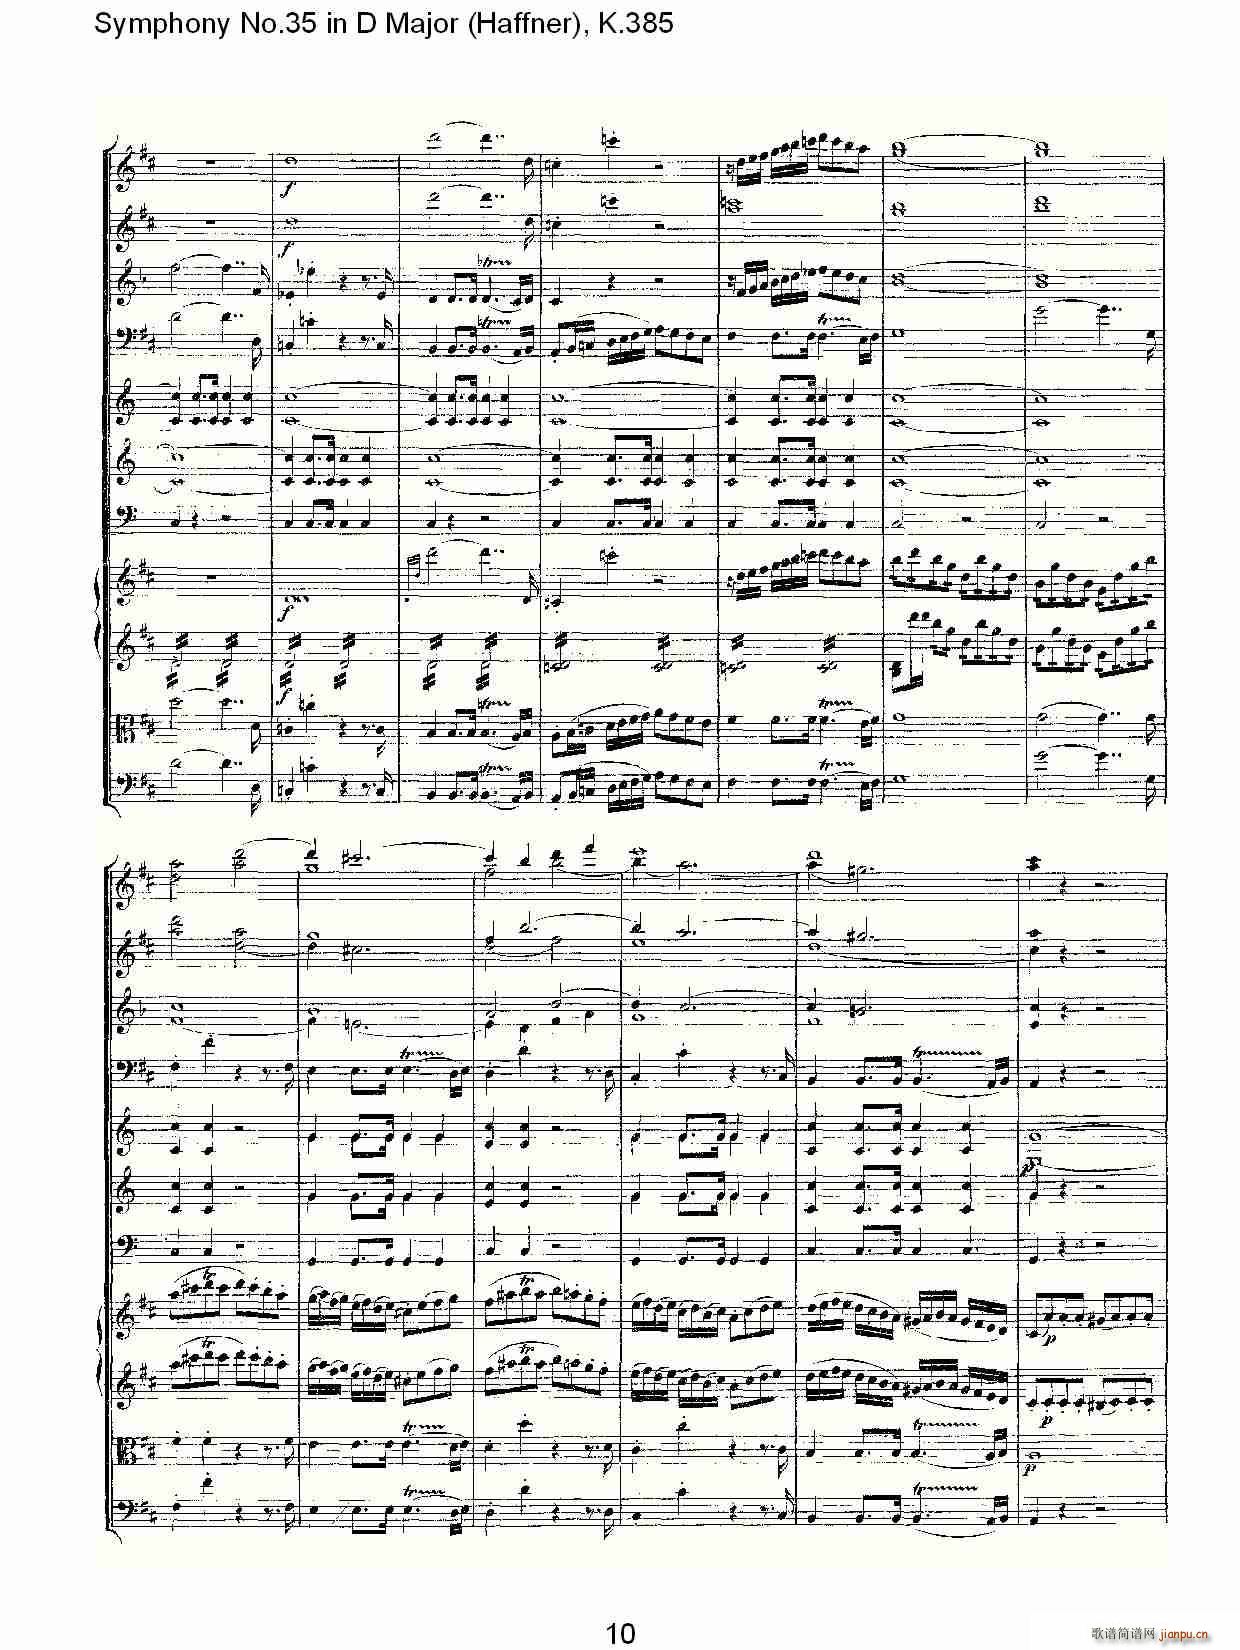 Symphony No.35 in D Major, K.385(ʮּ)10